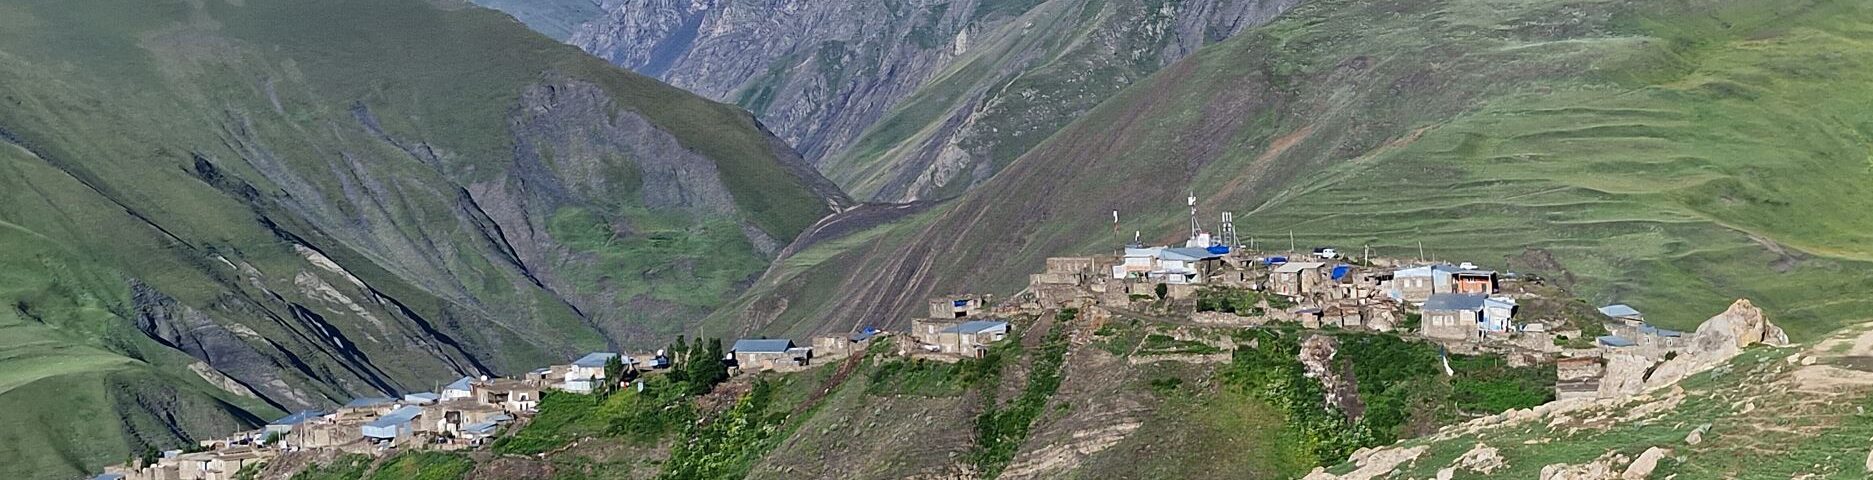 Mountain village Xinaliq in Azerbaijan